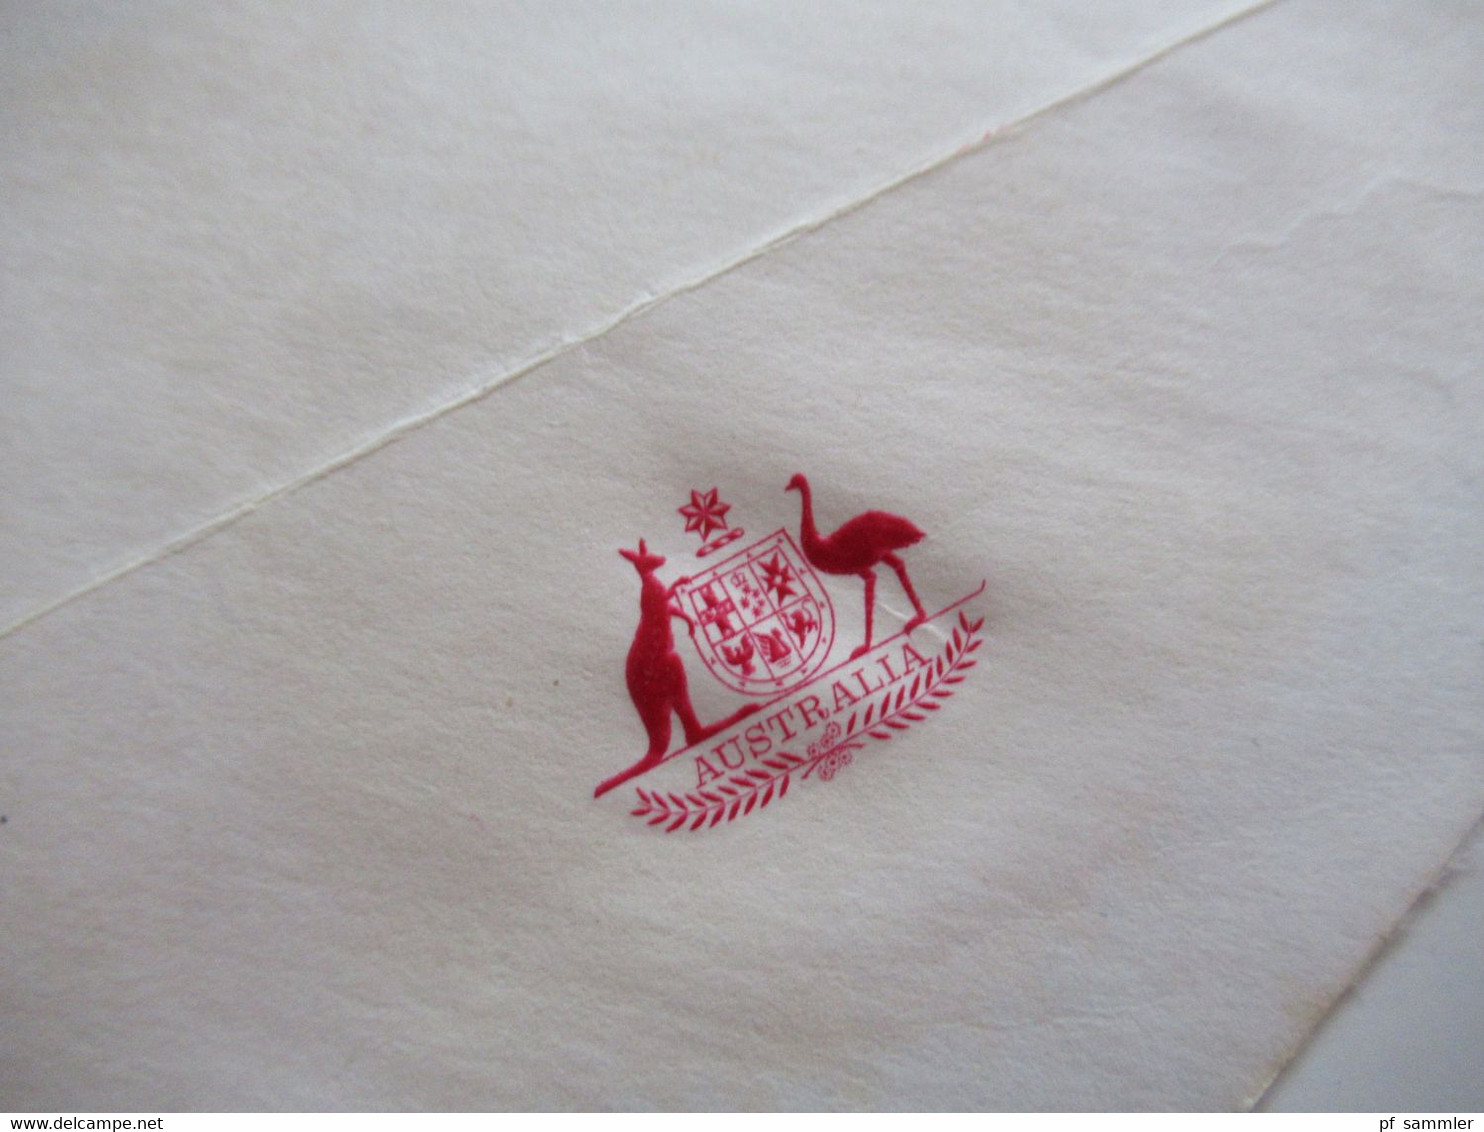 1980 Umschlag Australian Senate (Regierung) Mit Inhalt U. Original Unterschrift K.O. Bradshaw Acting Clerk Of The Senate - Brieven En Documenten